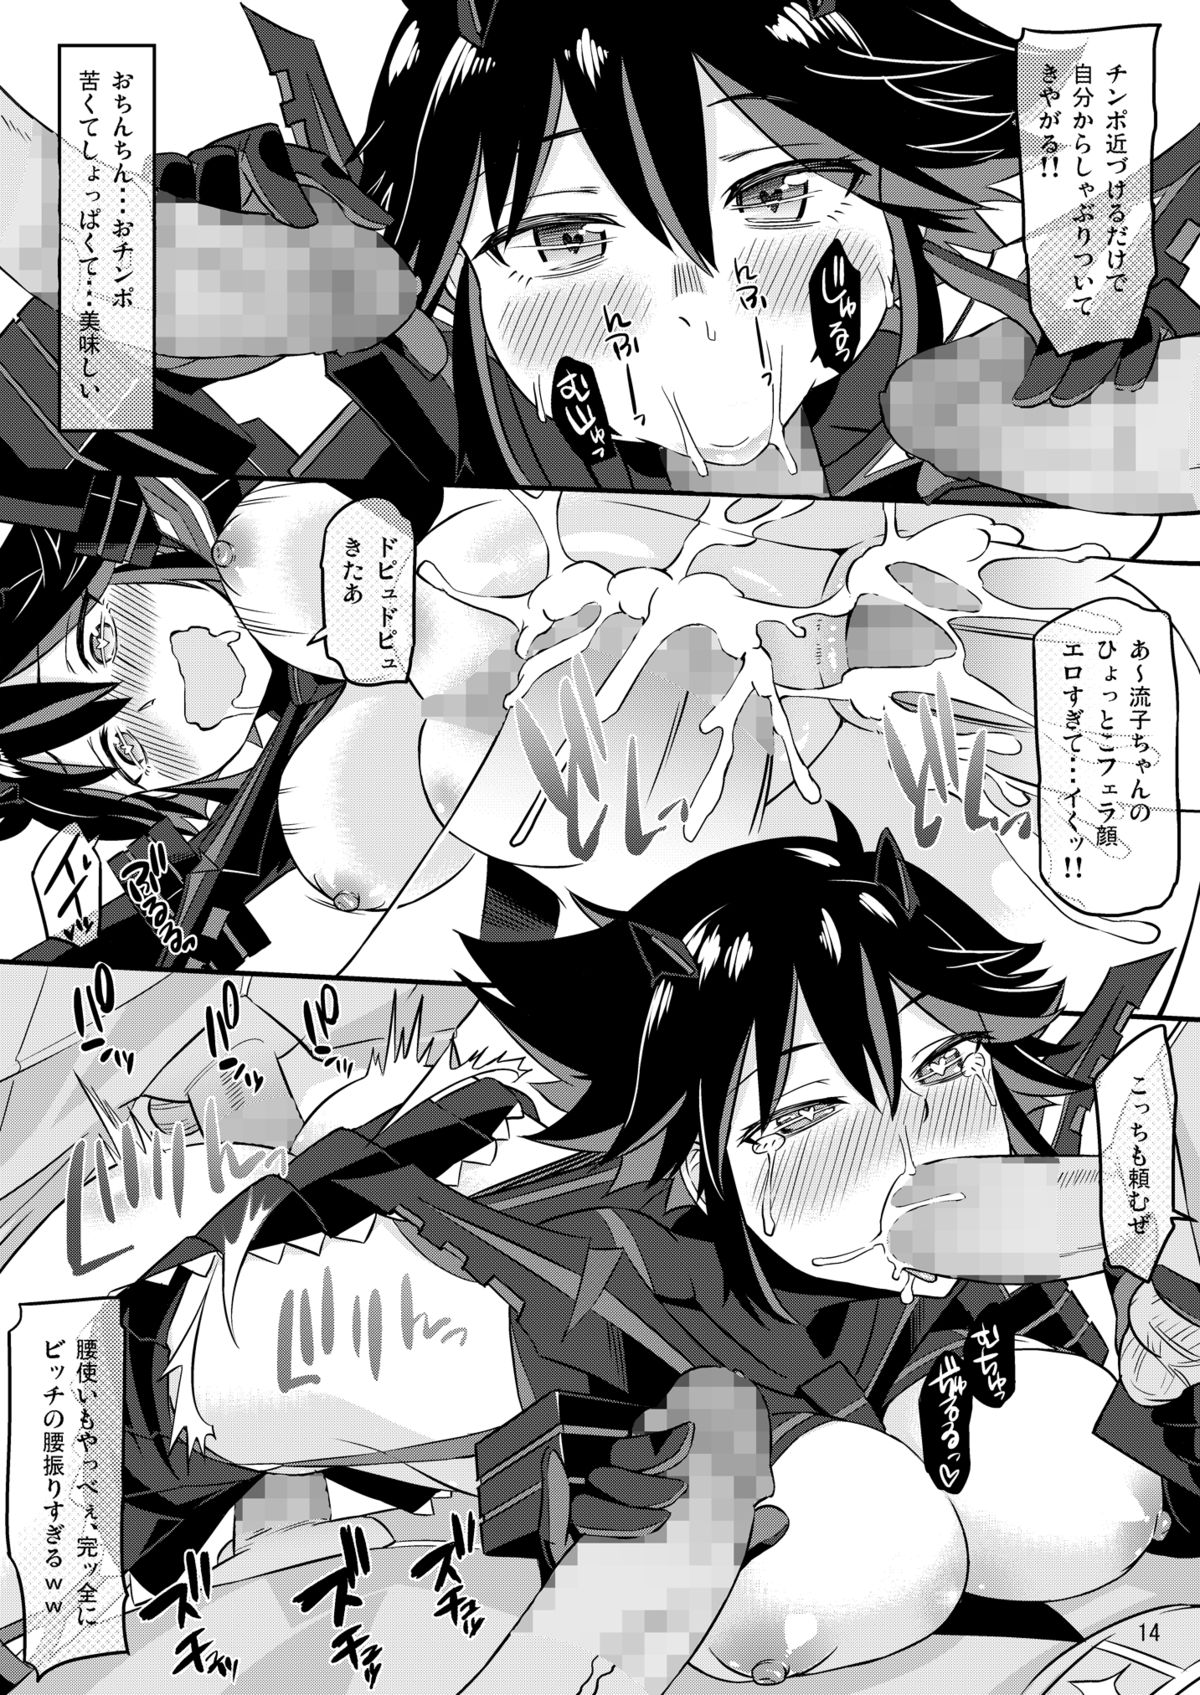 [Surface Tension (Orikuchi)] Seven Days (Kill La Kill) [Digital] page 13 full